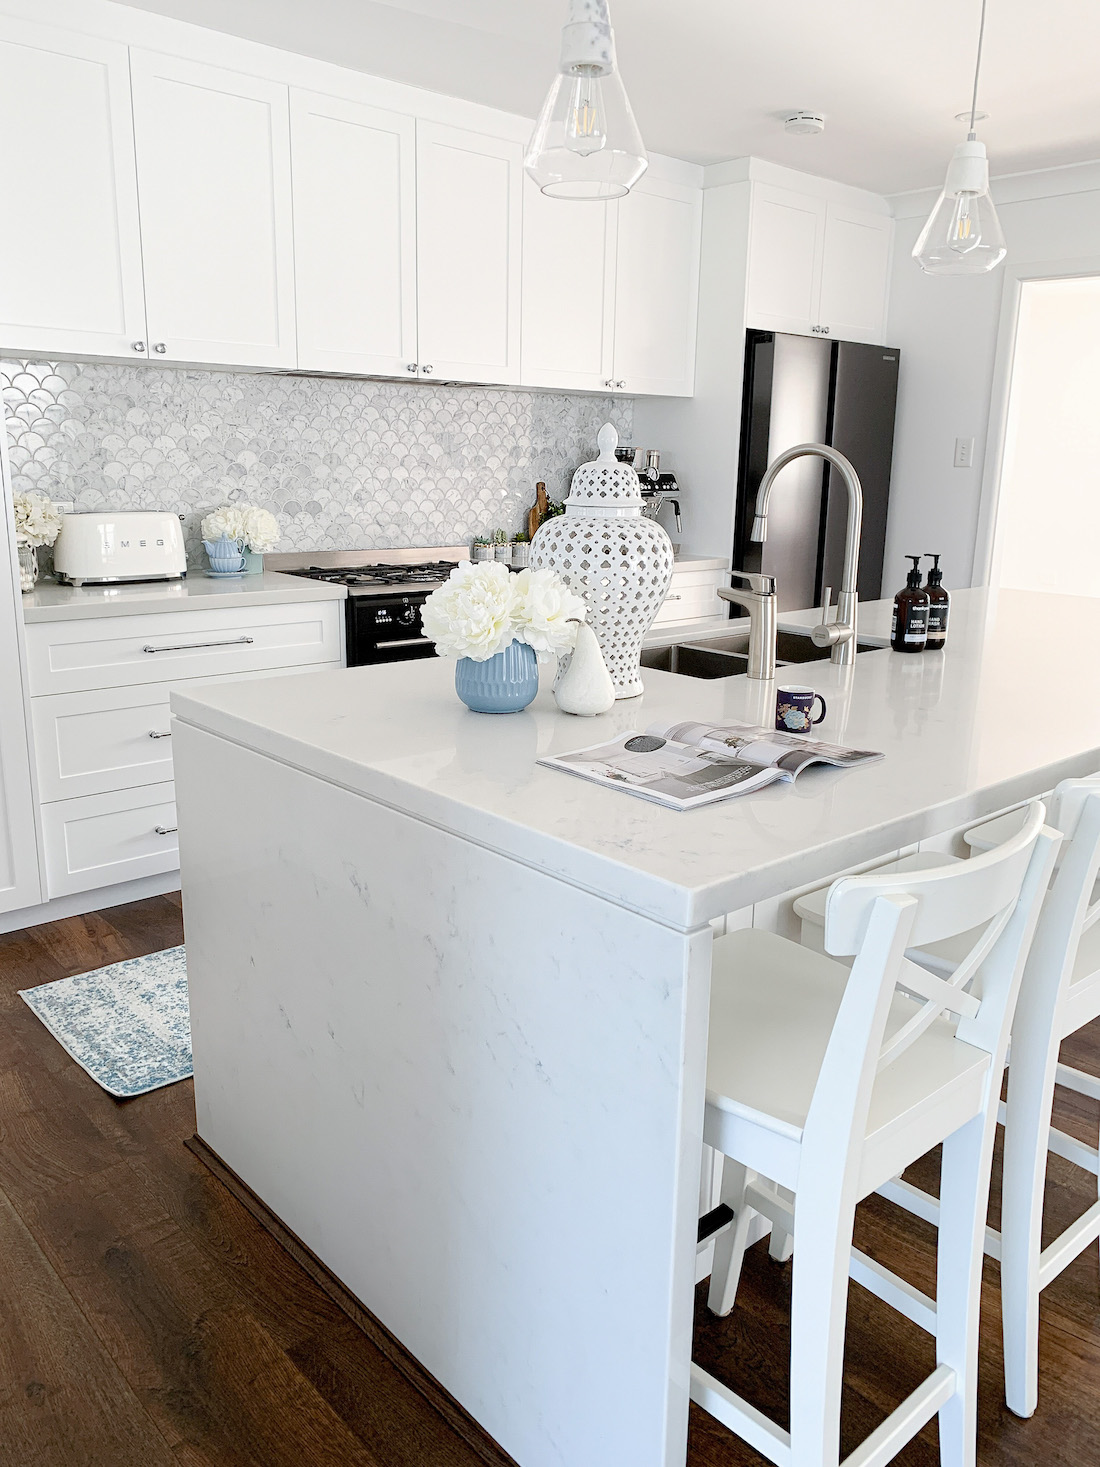 Hamptons inspired kitchen makeover _ White kitchen makeover